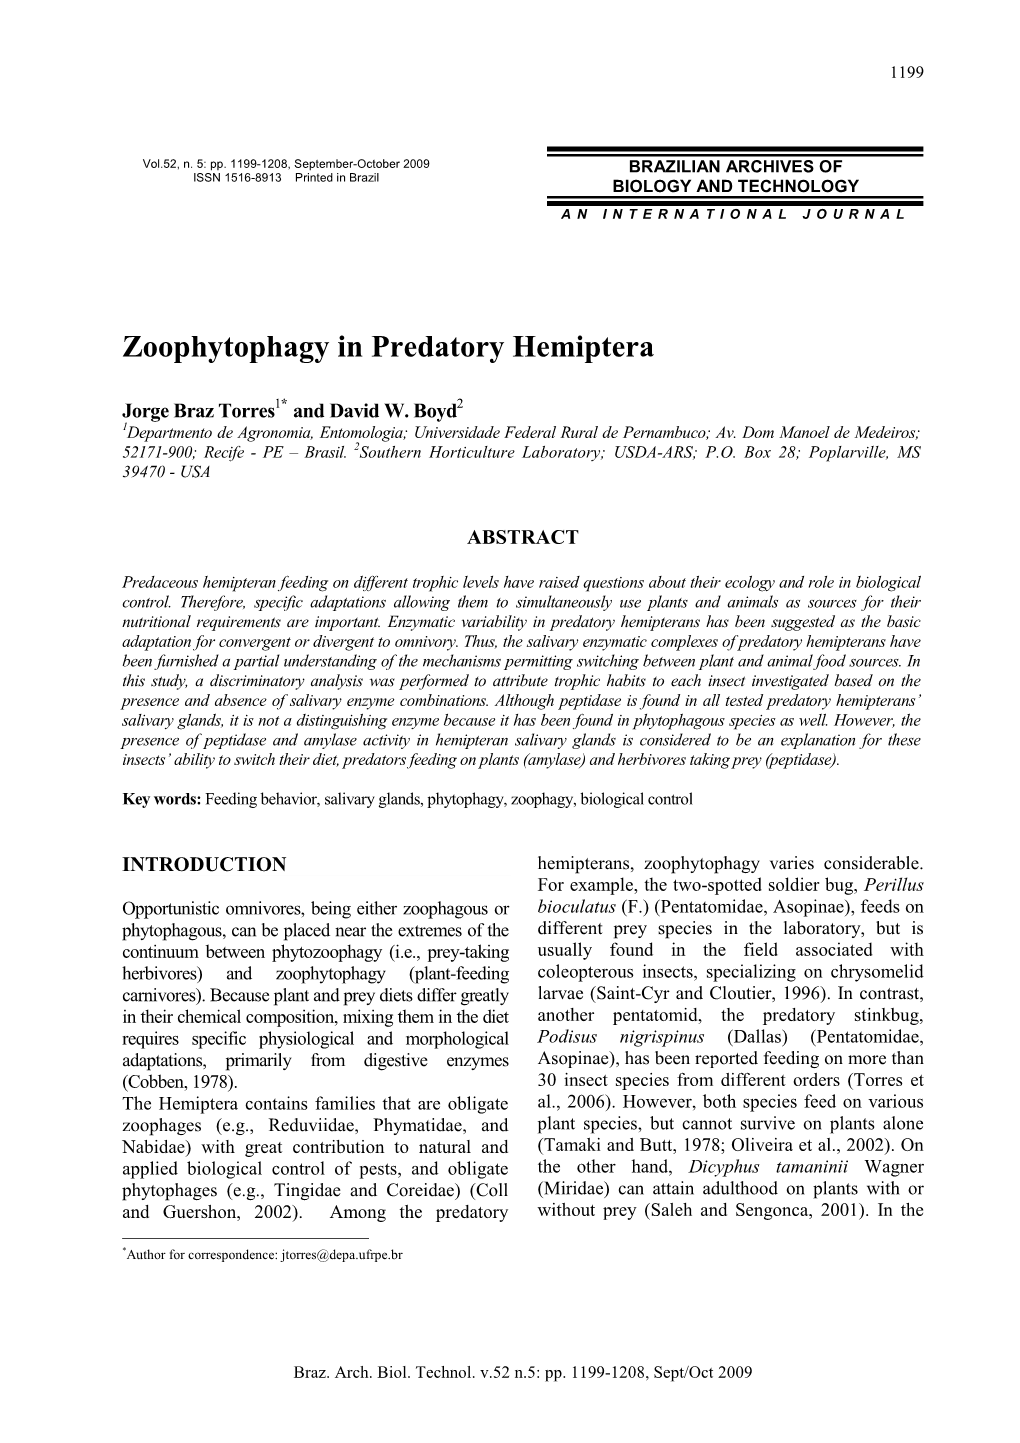 Zoophytophagy in Predatory Hemiptera